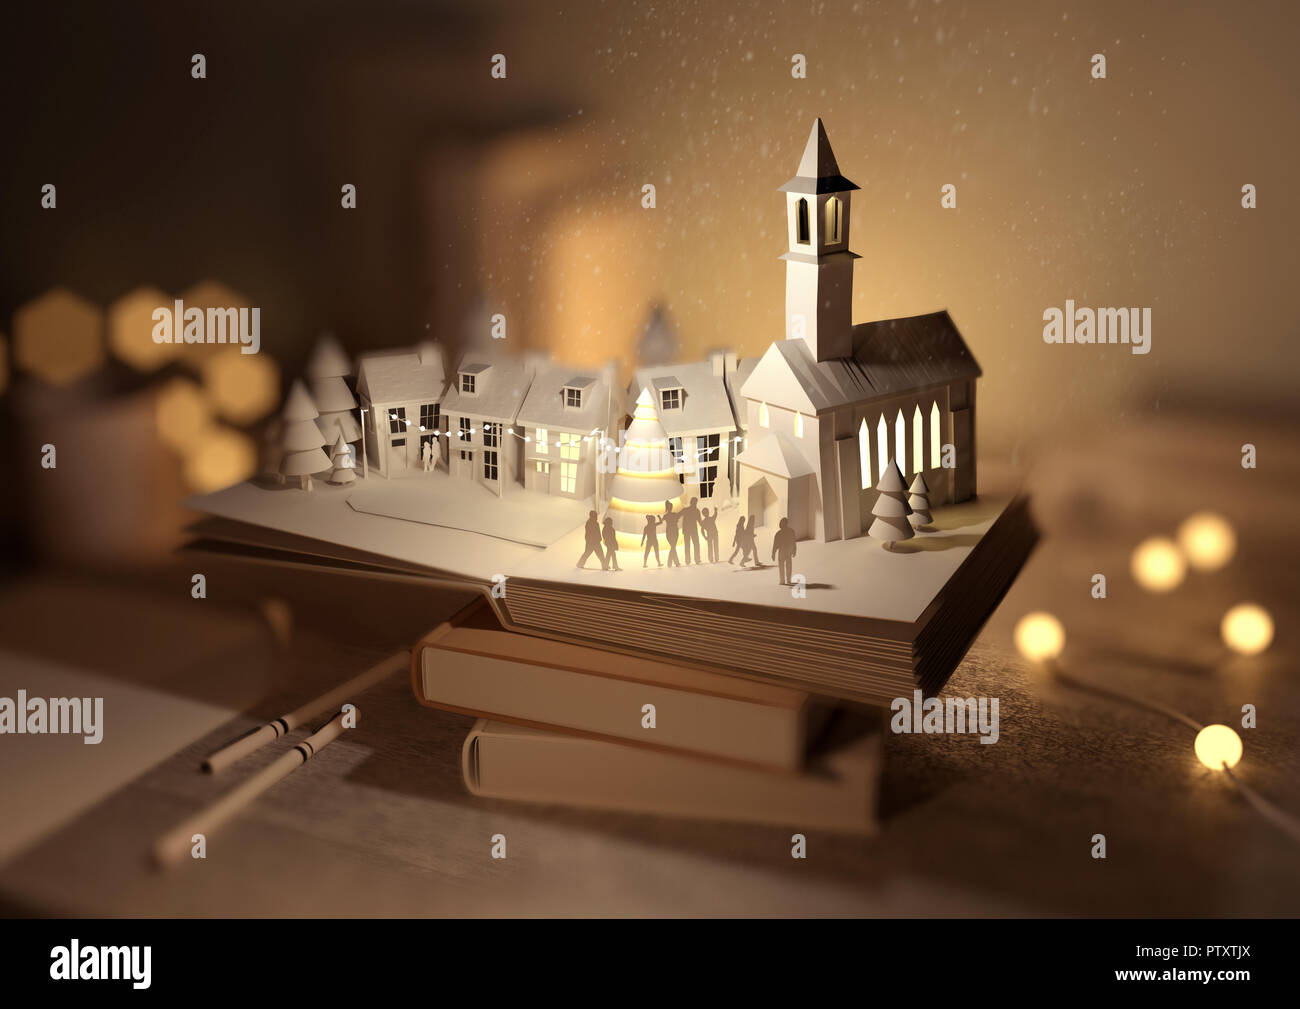 Einen Stapel Bücher mit einem Pop-Up-Buch - Weihnachten geöffnet enthüllt eine festliche Weihnachten Stadt. 3D-Darstellung. Stockfoto